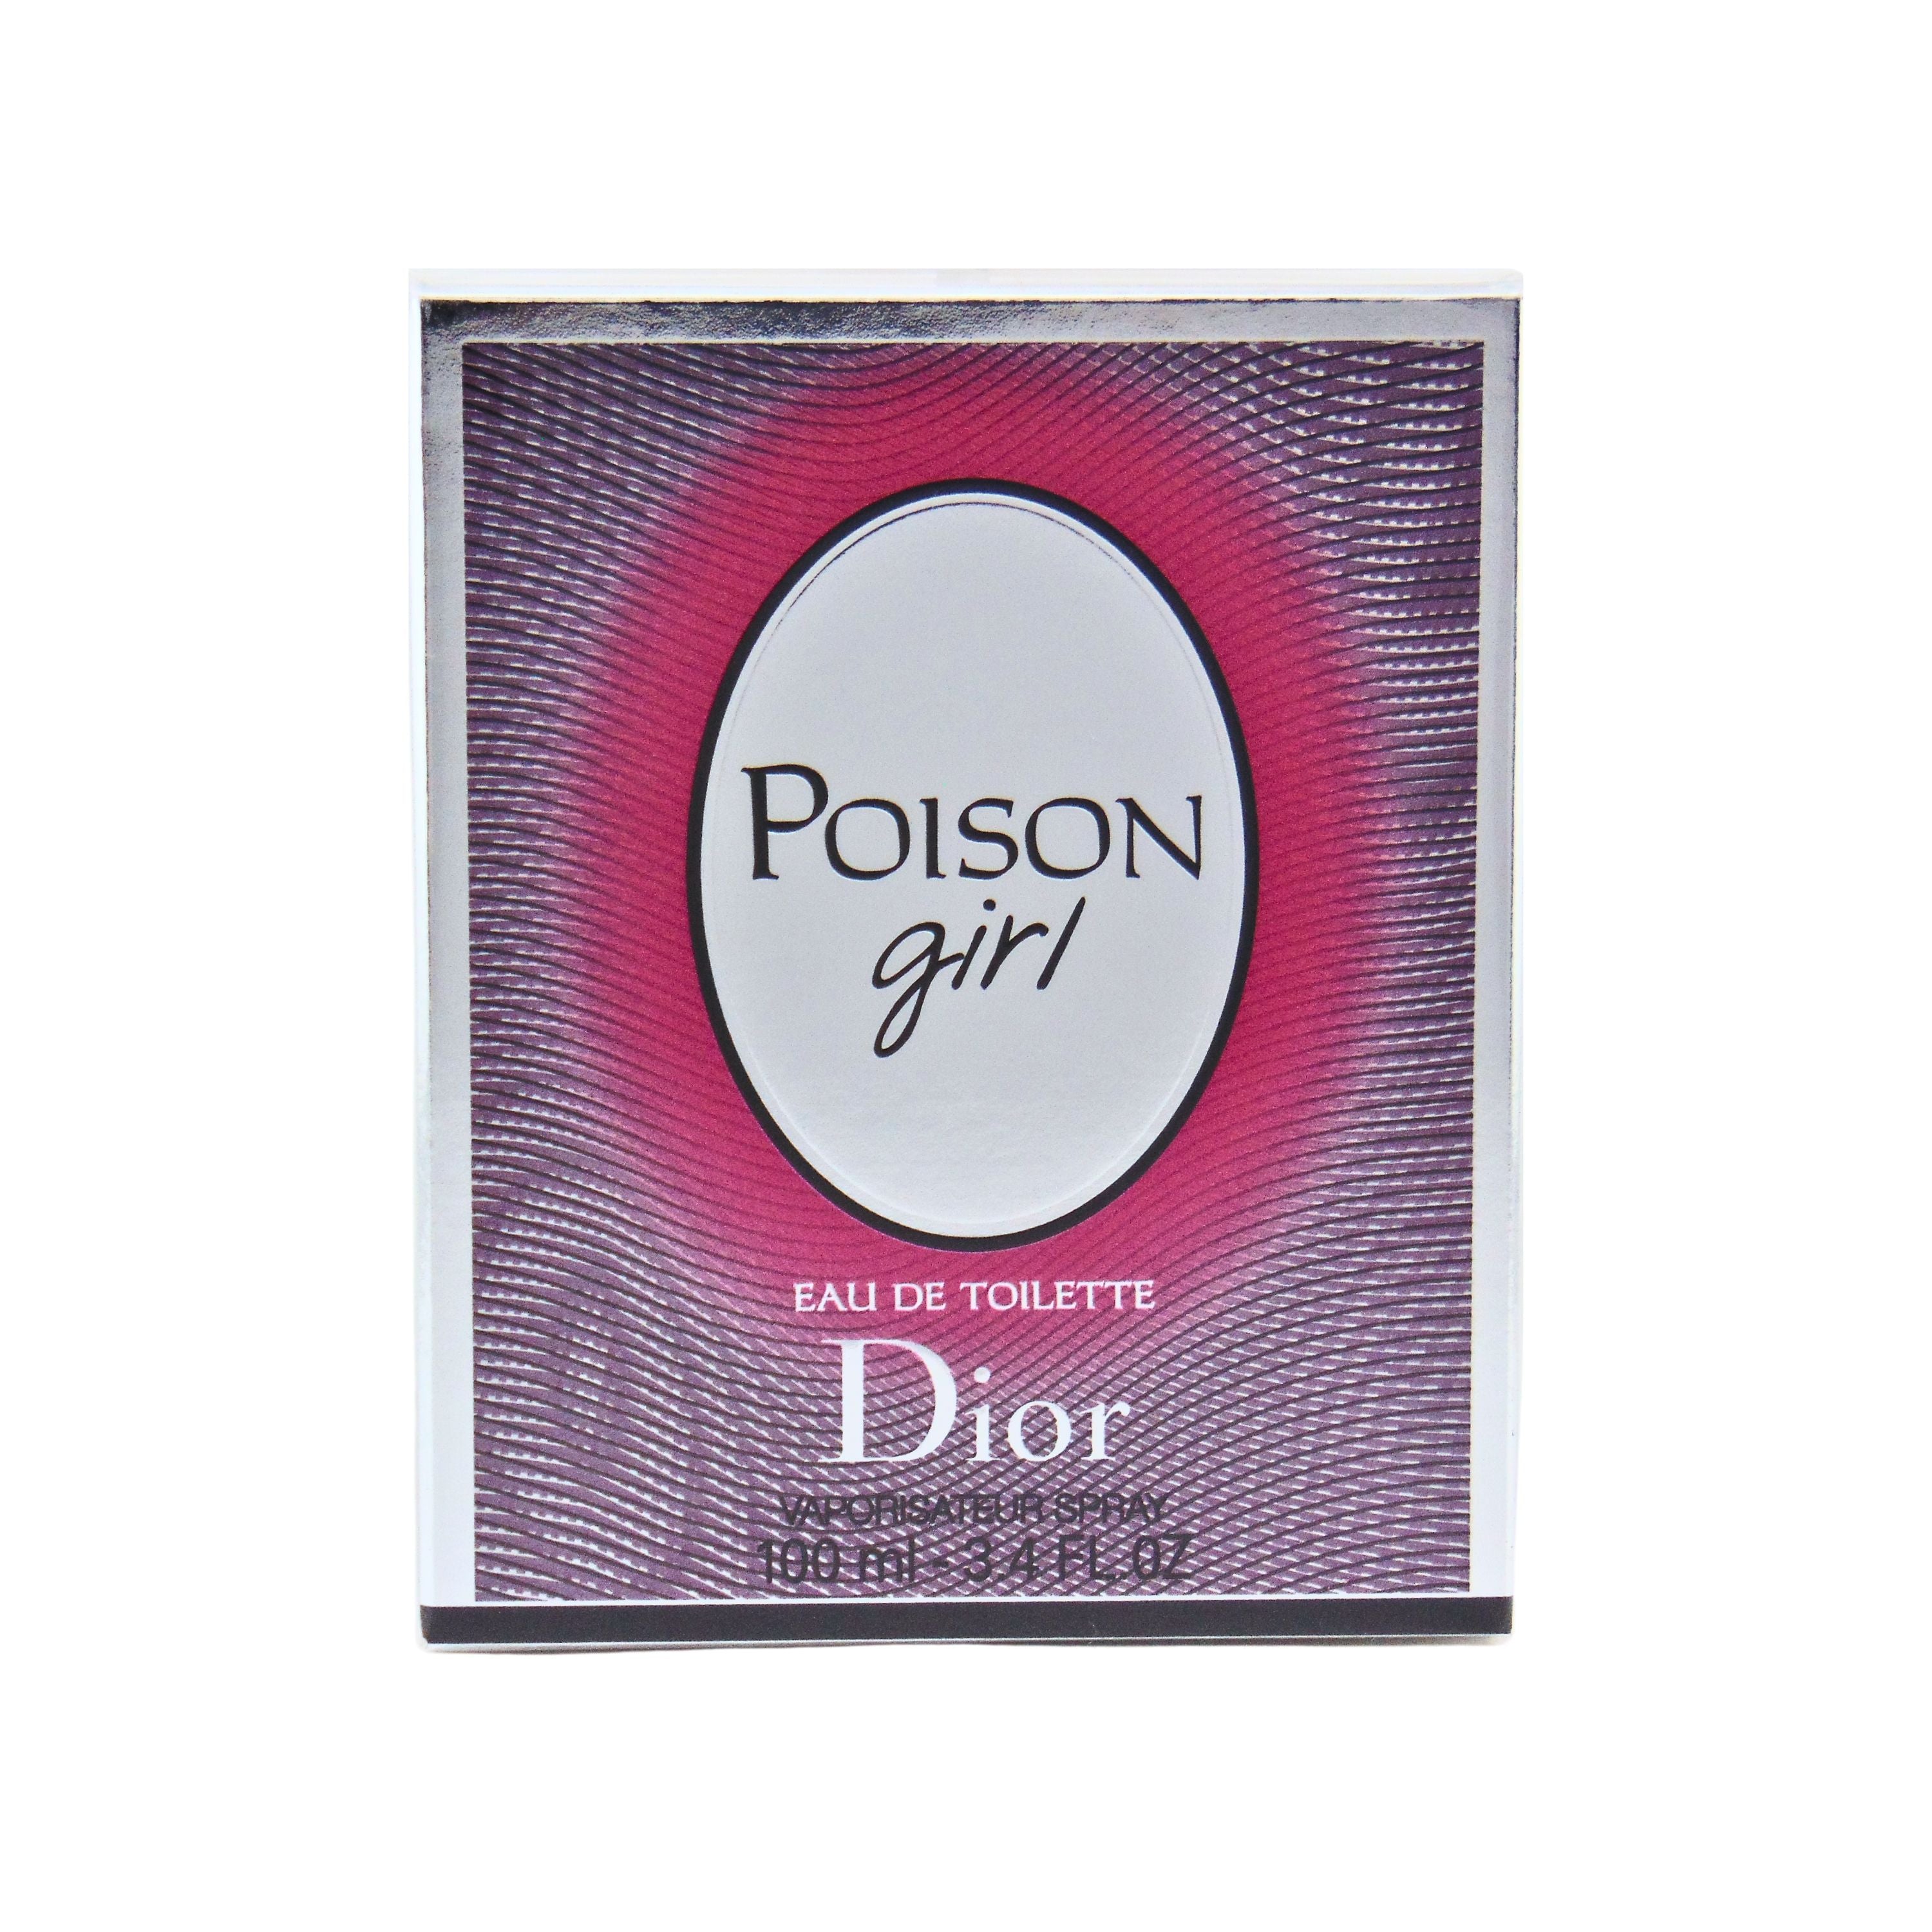 Dior Poison Girl Eau de Toilette for Women